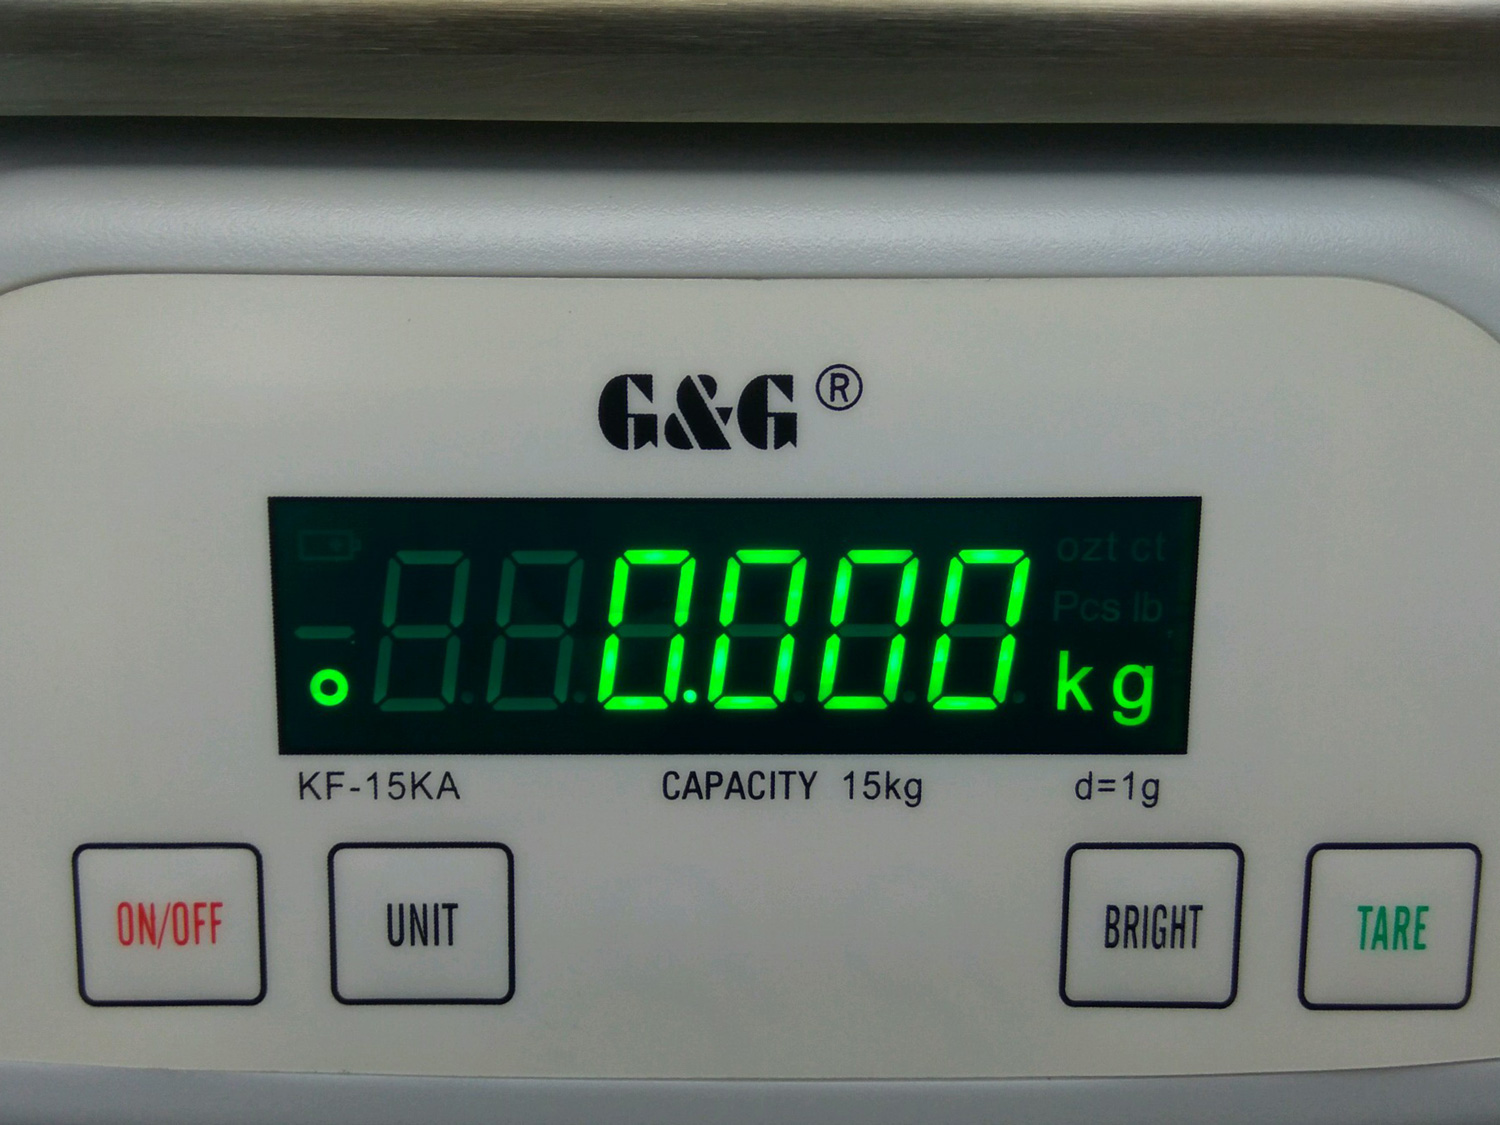 KF Küchenwaagen, verschiedene Modelle bis 25kg Messbereich, ab 0